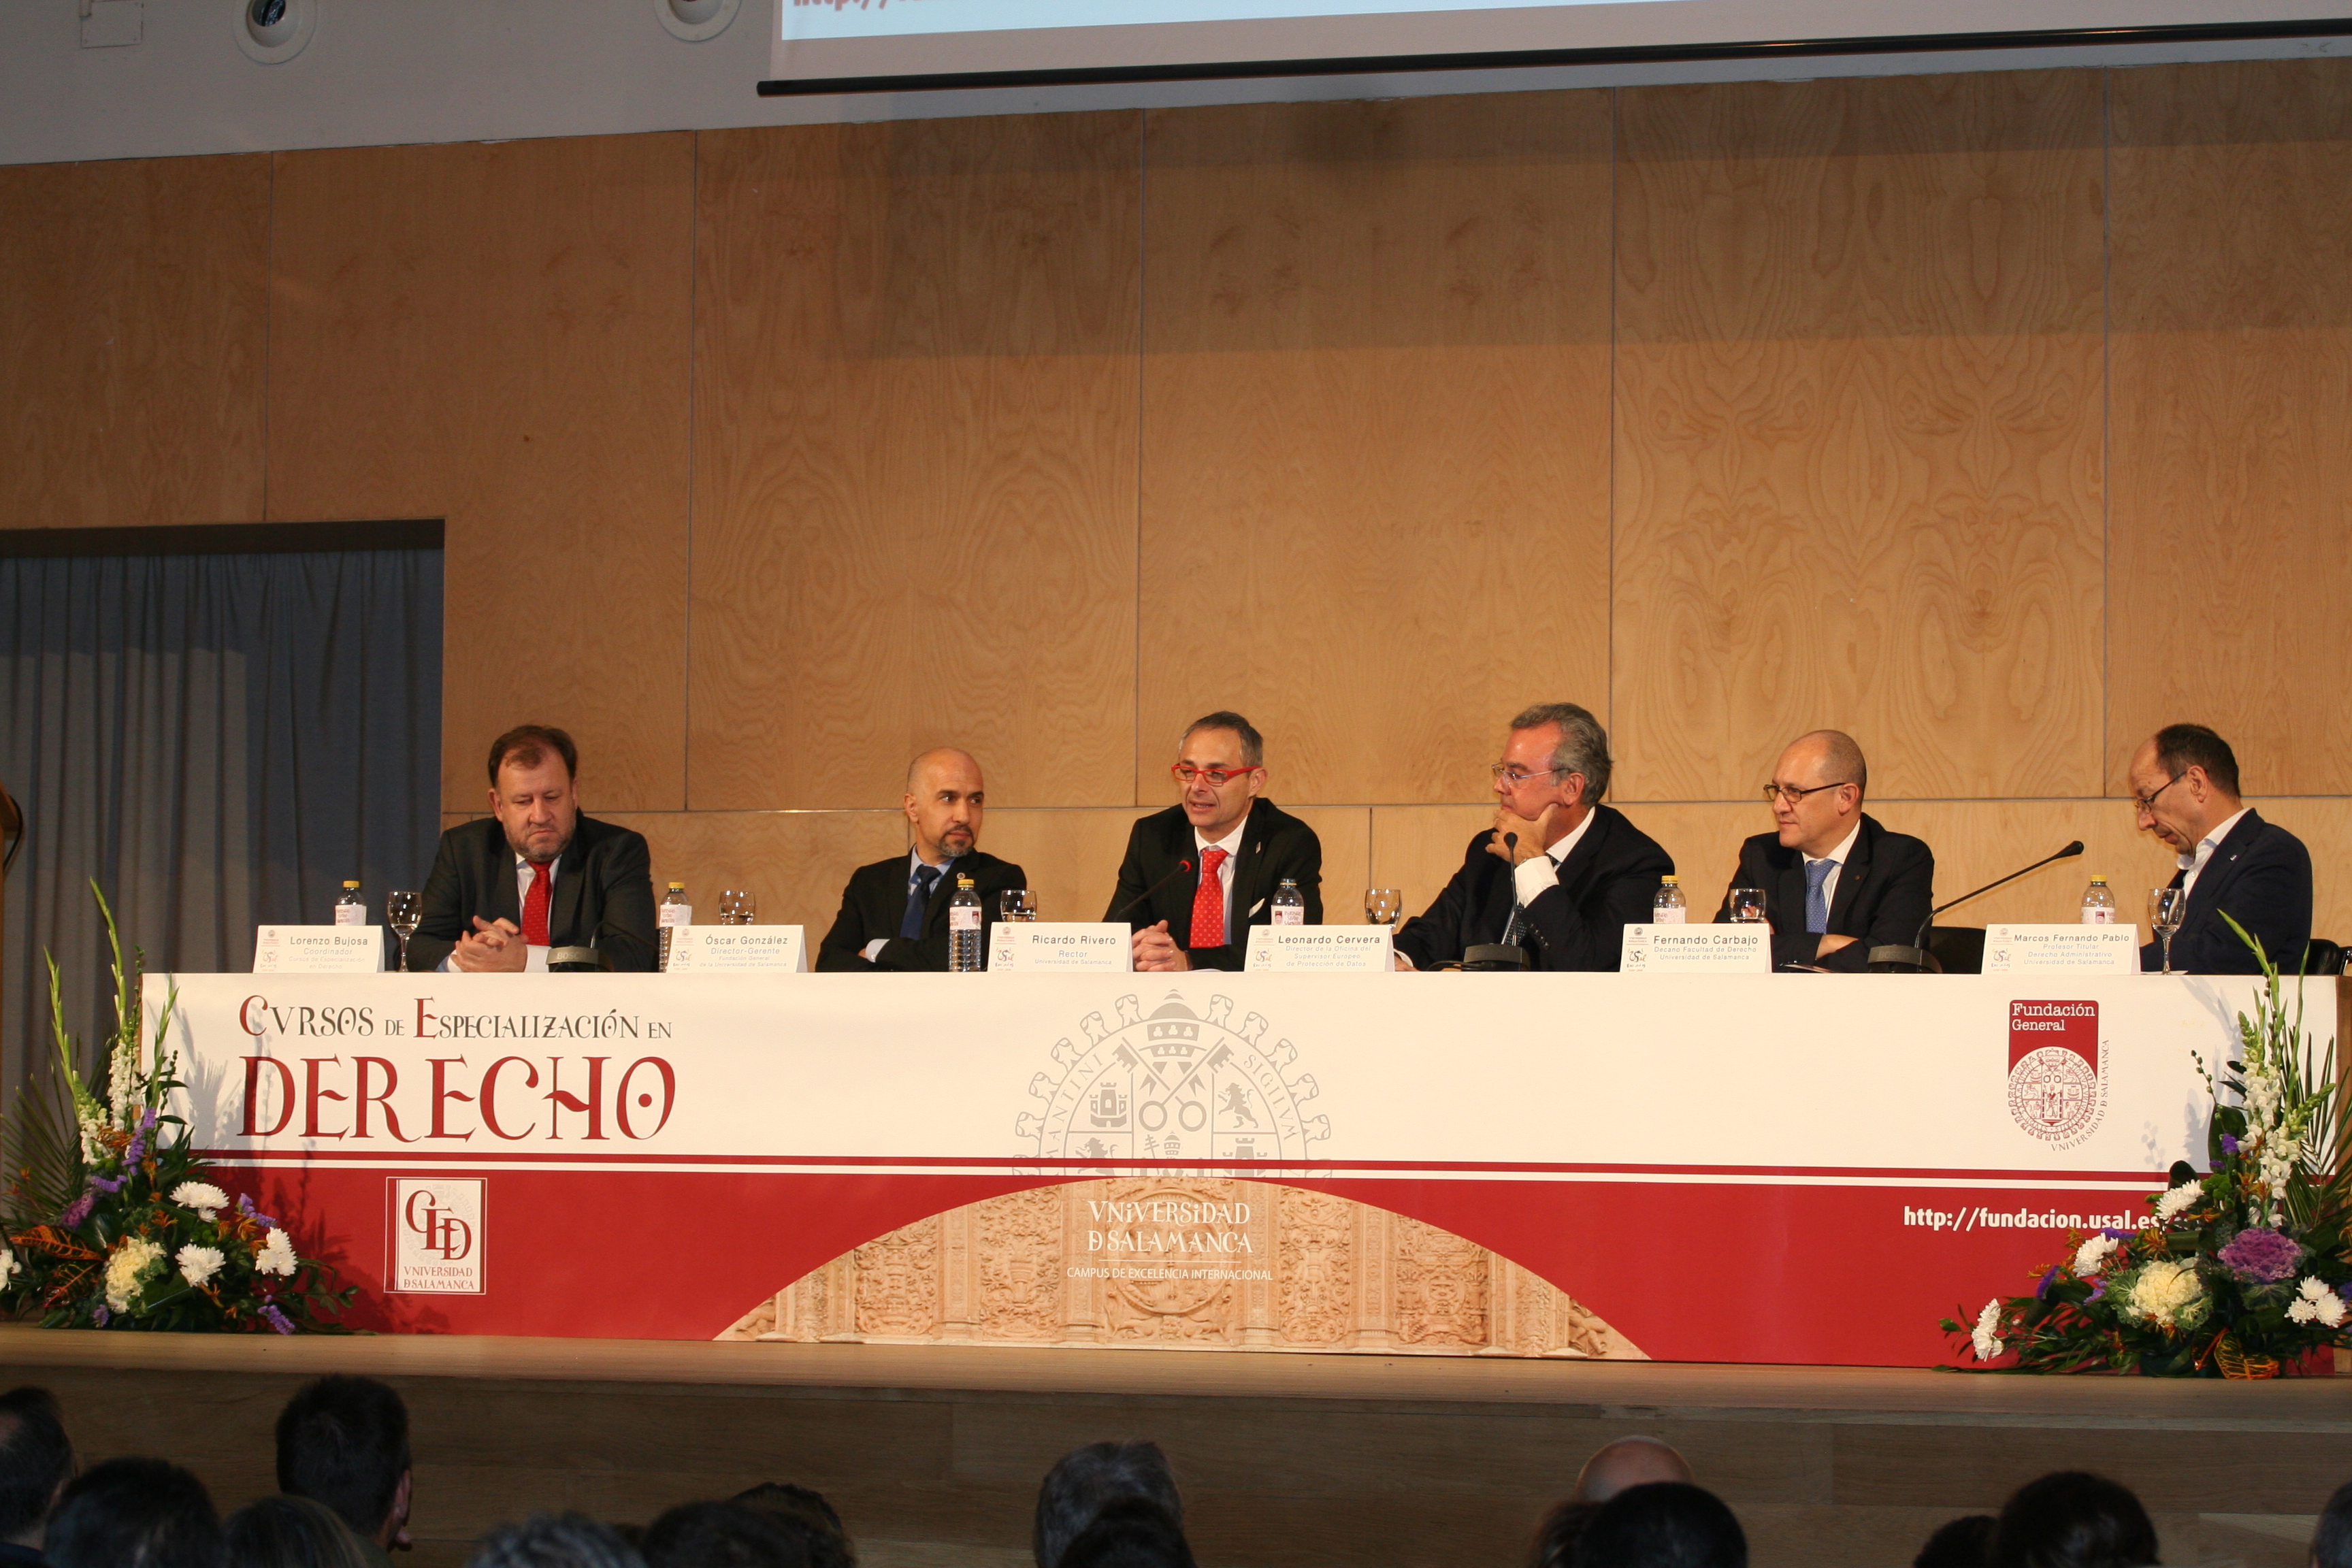 La Universidad de Salamanca recibe a cerca de 300 juristas en la 44ª edición de sus Cursos de Especialización en Derecho